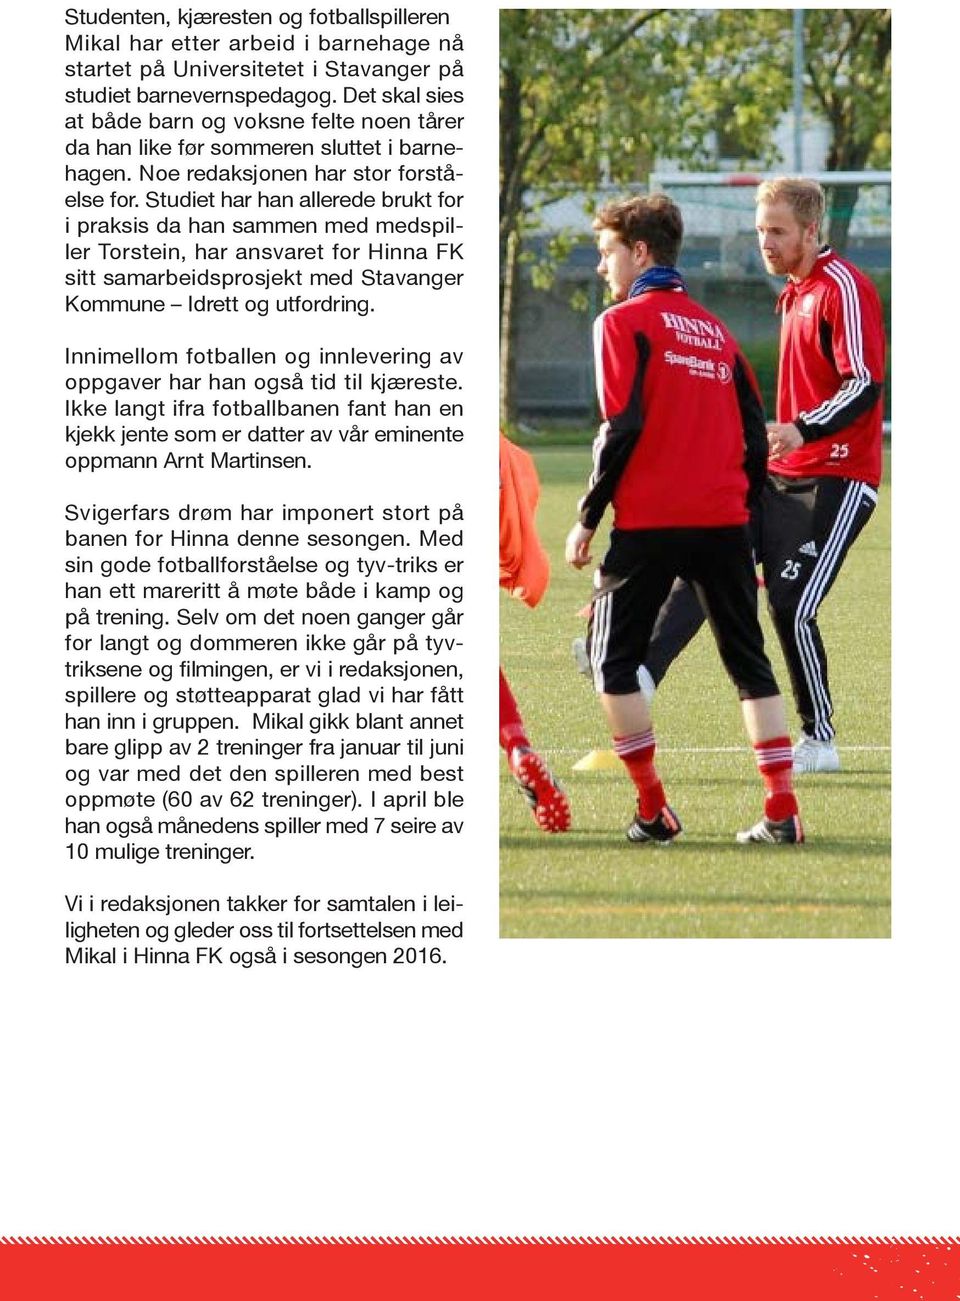 Studiet har han allerede brukt for i praksis da han sammen med medspiller Torstein, har ansvaret for Hinna FK sitt samarbeidsprosjekt med Stavanger Kommune Idrett og utfordring.